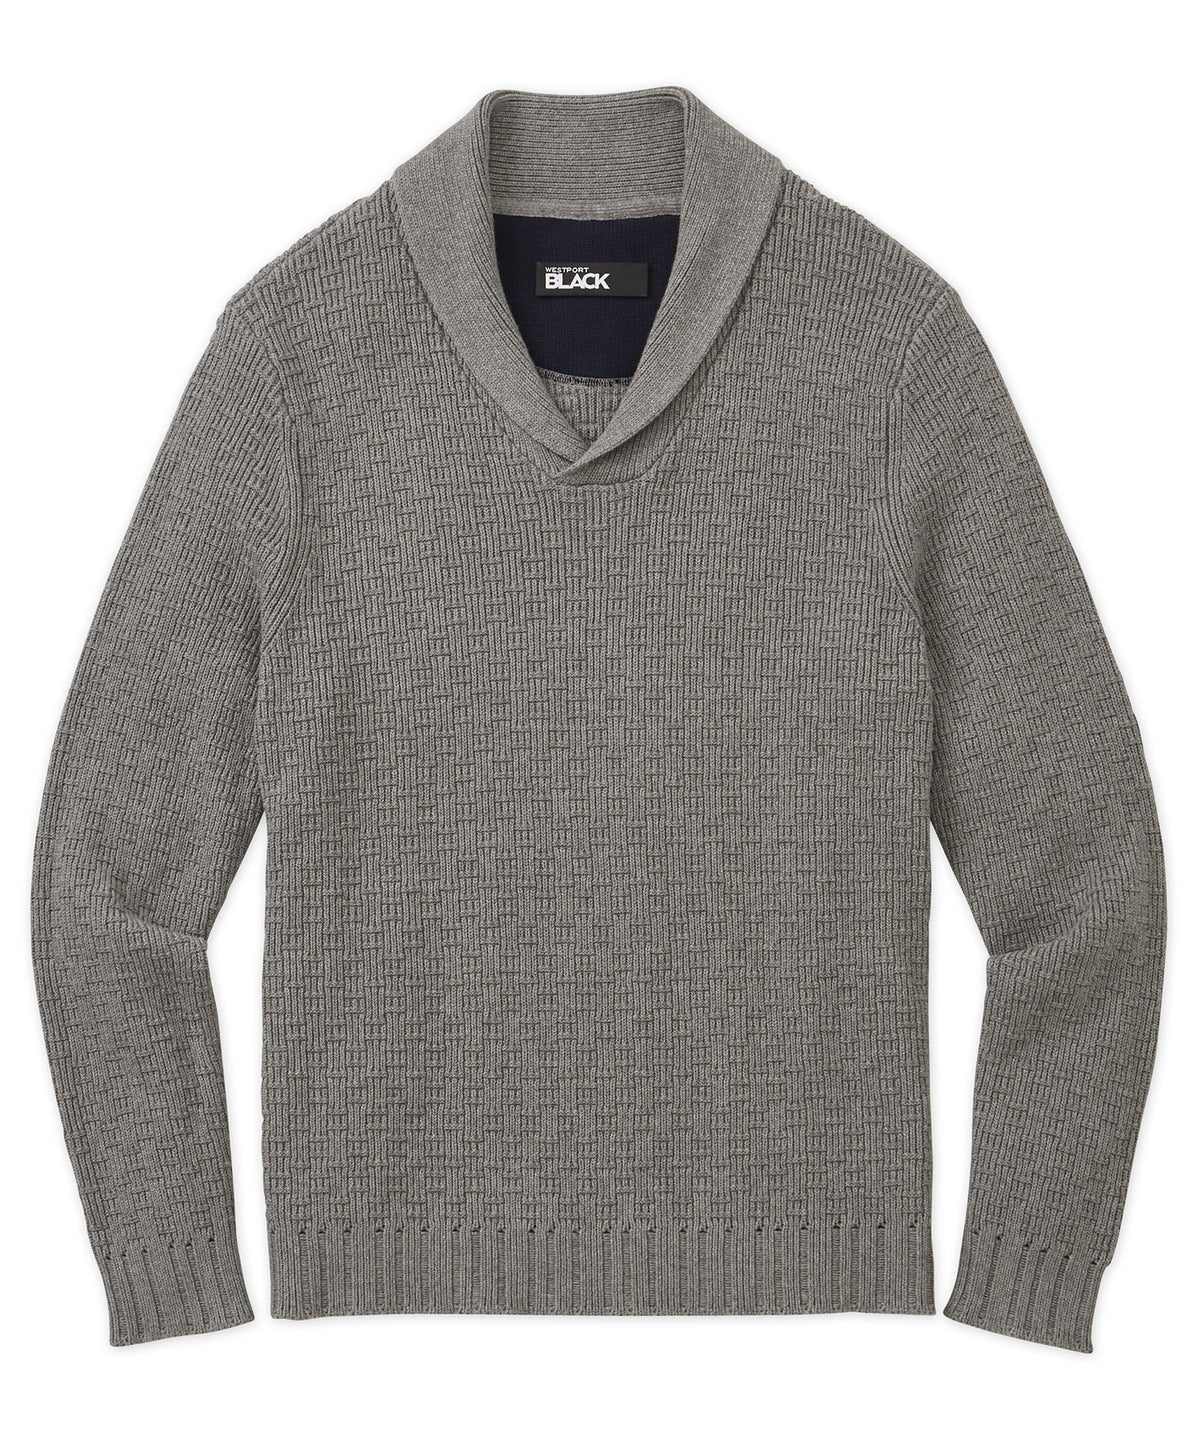 Westport Black Shawl Collar Sweater, Big & Tall